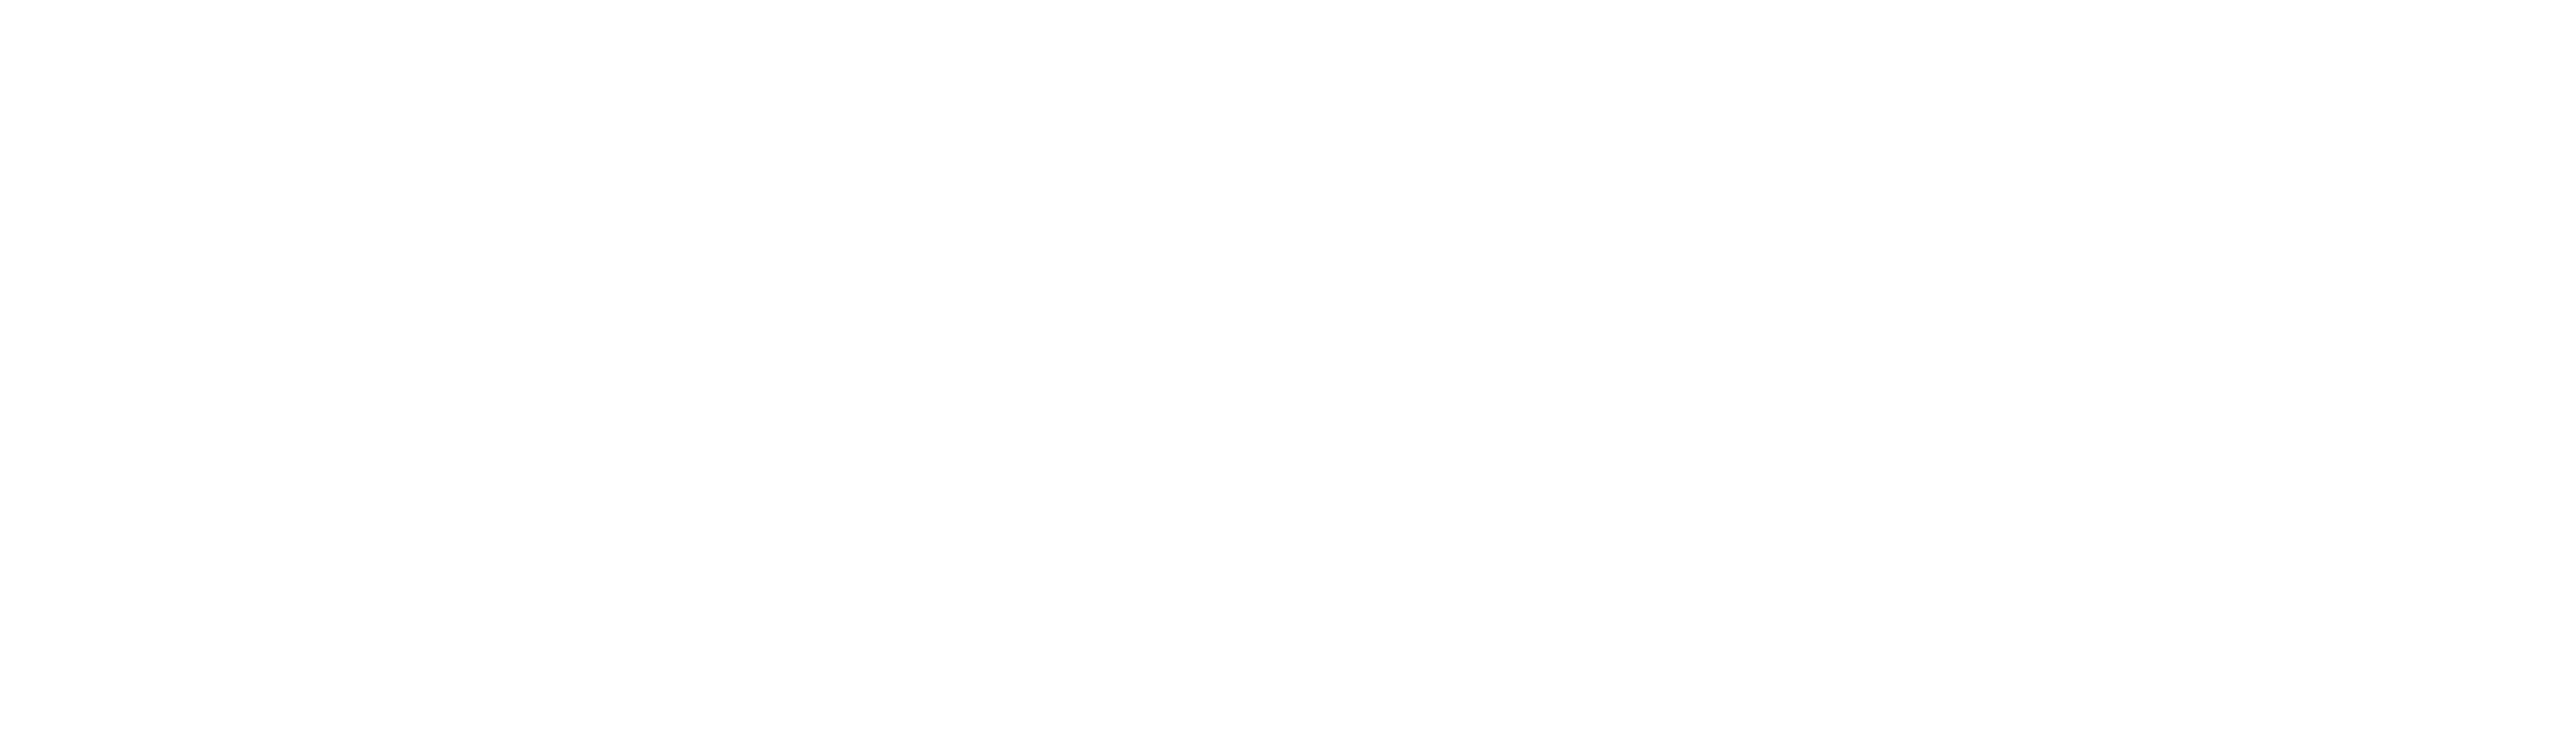 Sharpadvertising logo